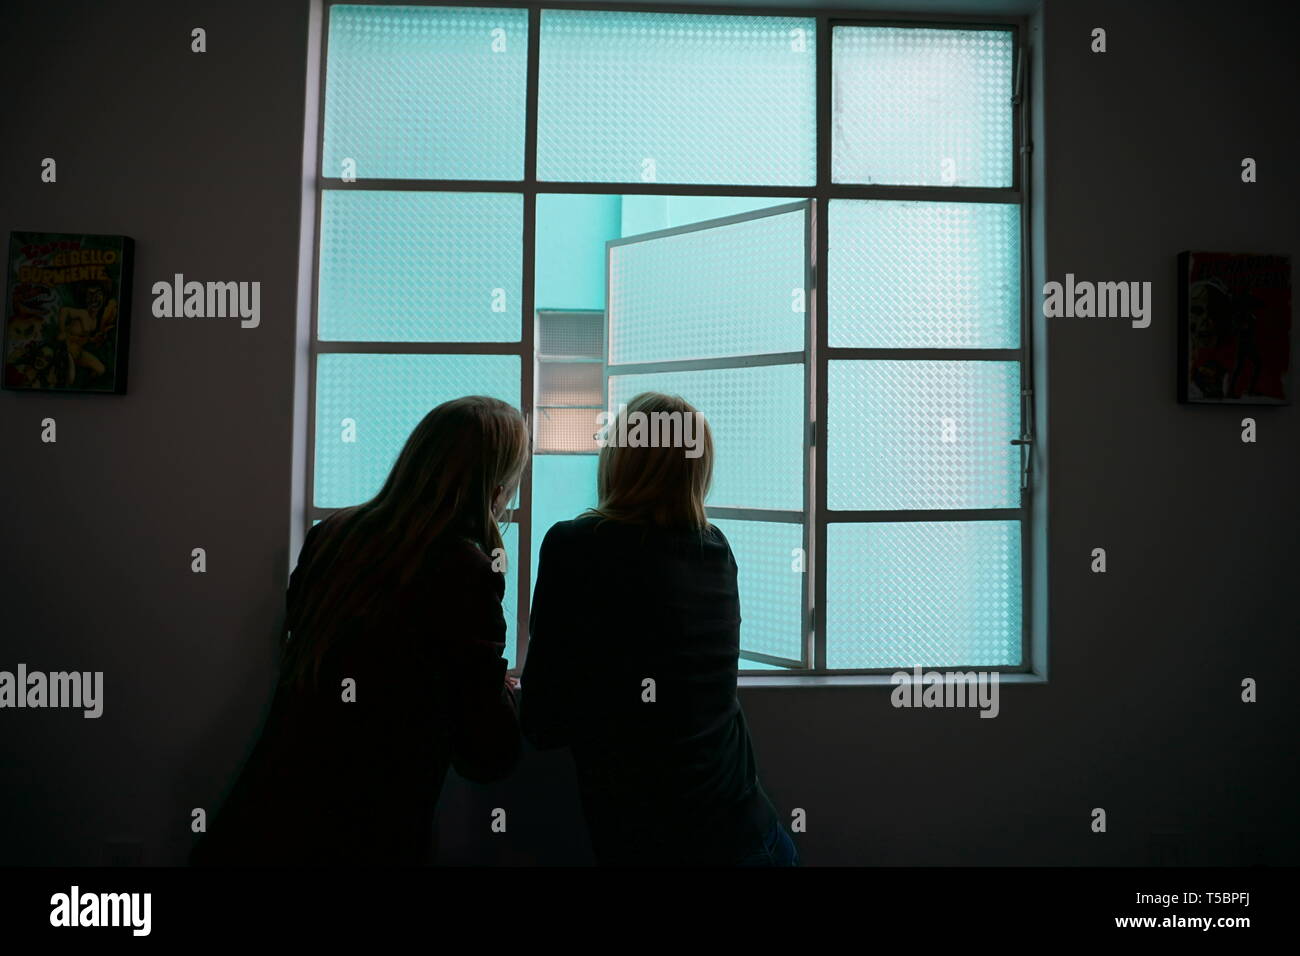 Silueta de la mujer y la niña mirando por la ventana de vidrio esmerilado, ventana de color turquesa. Foto de stock